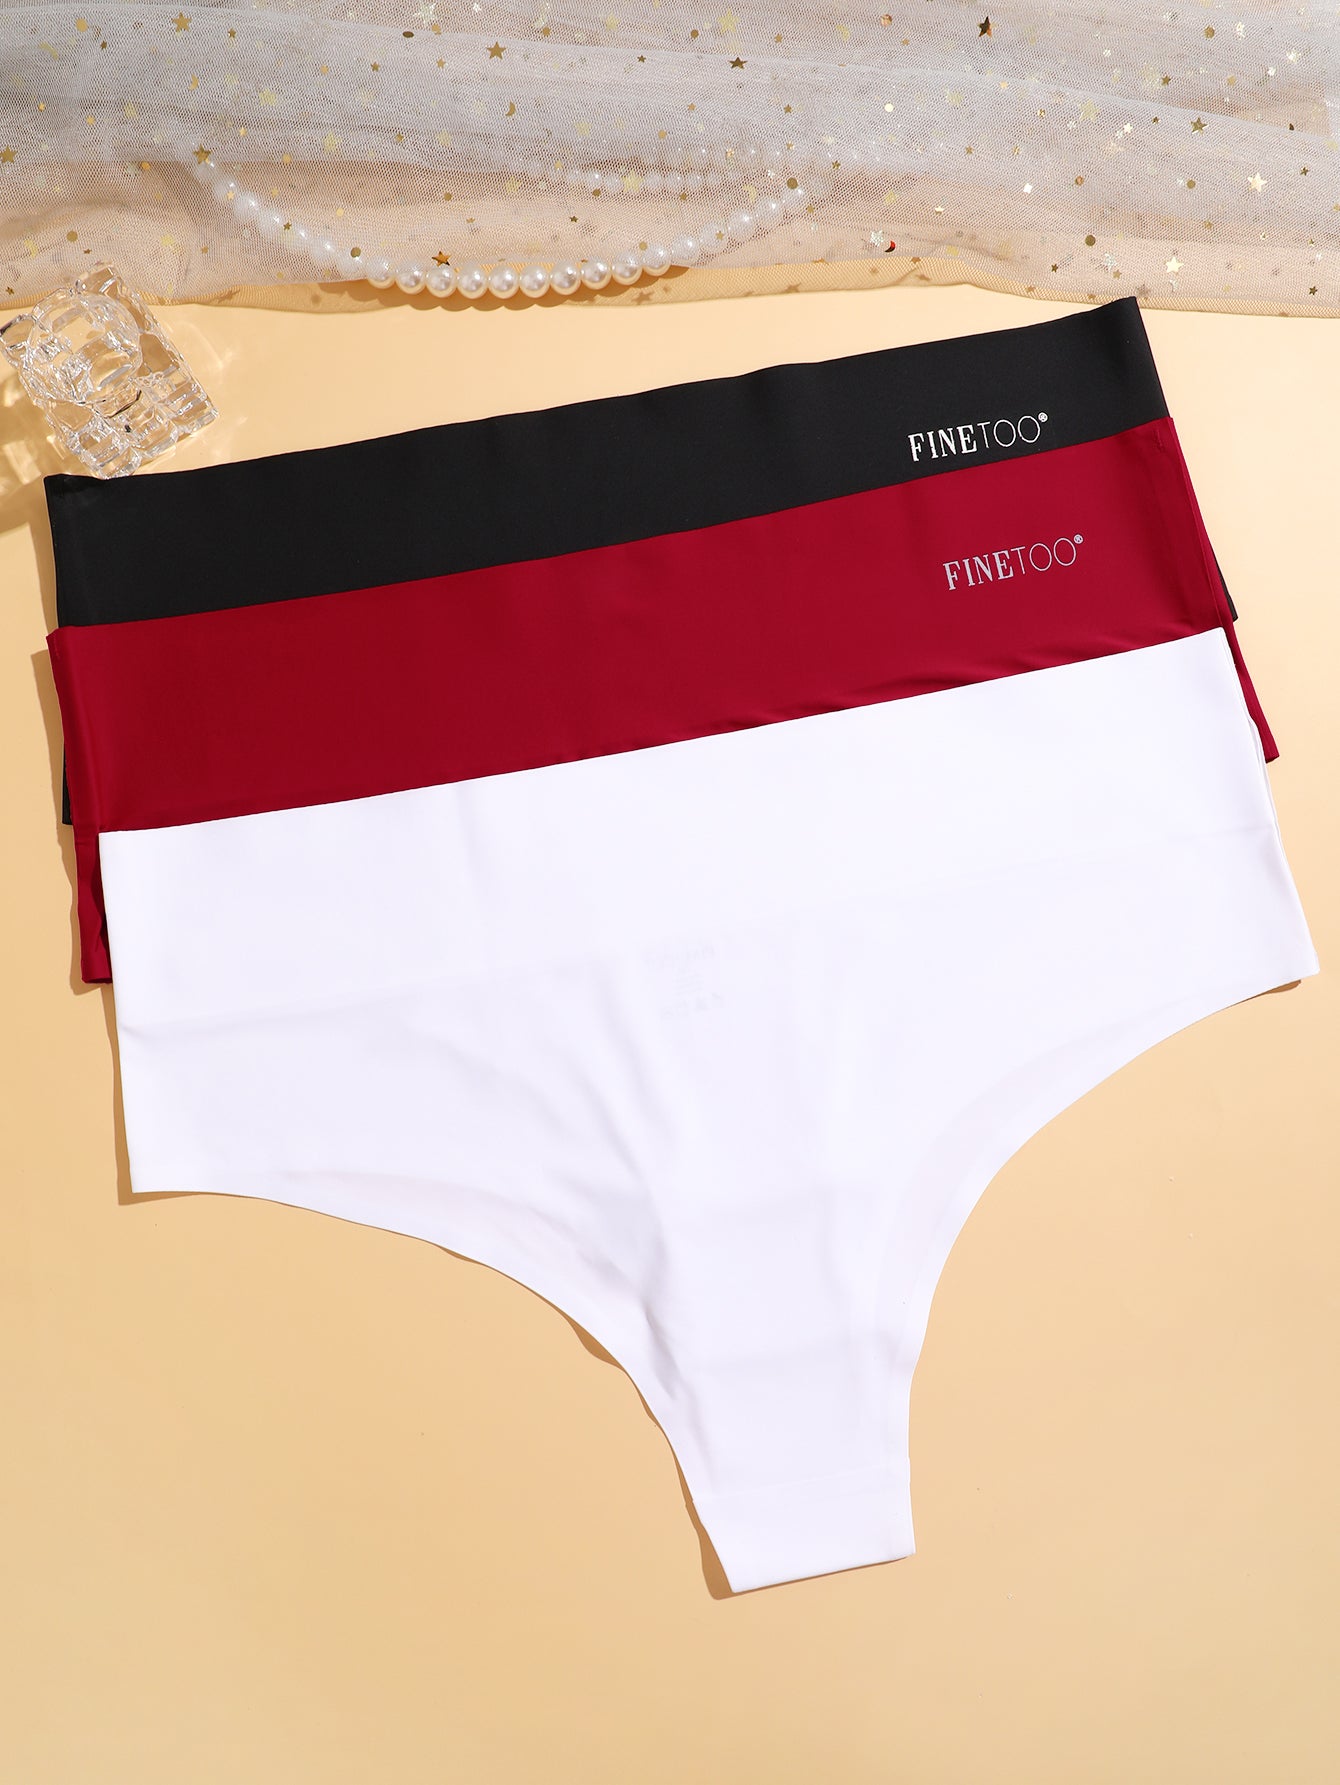 FINETOO 4 Pack Women's Cotton Underwear Sexy Low Nigeria